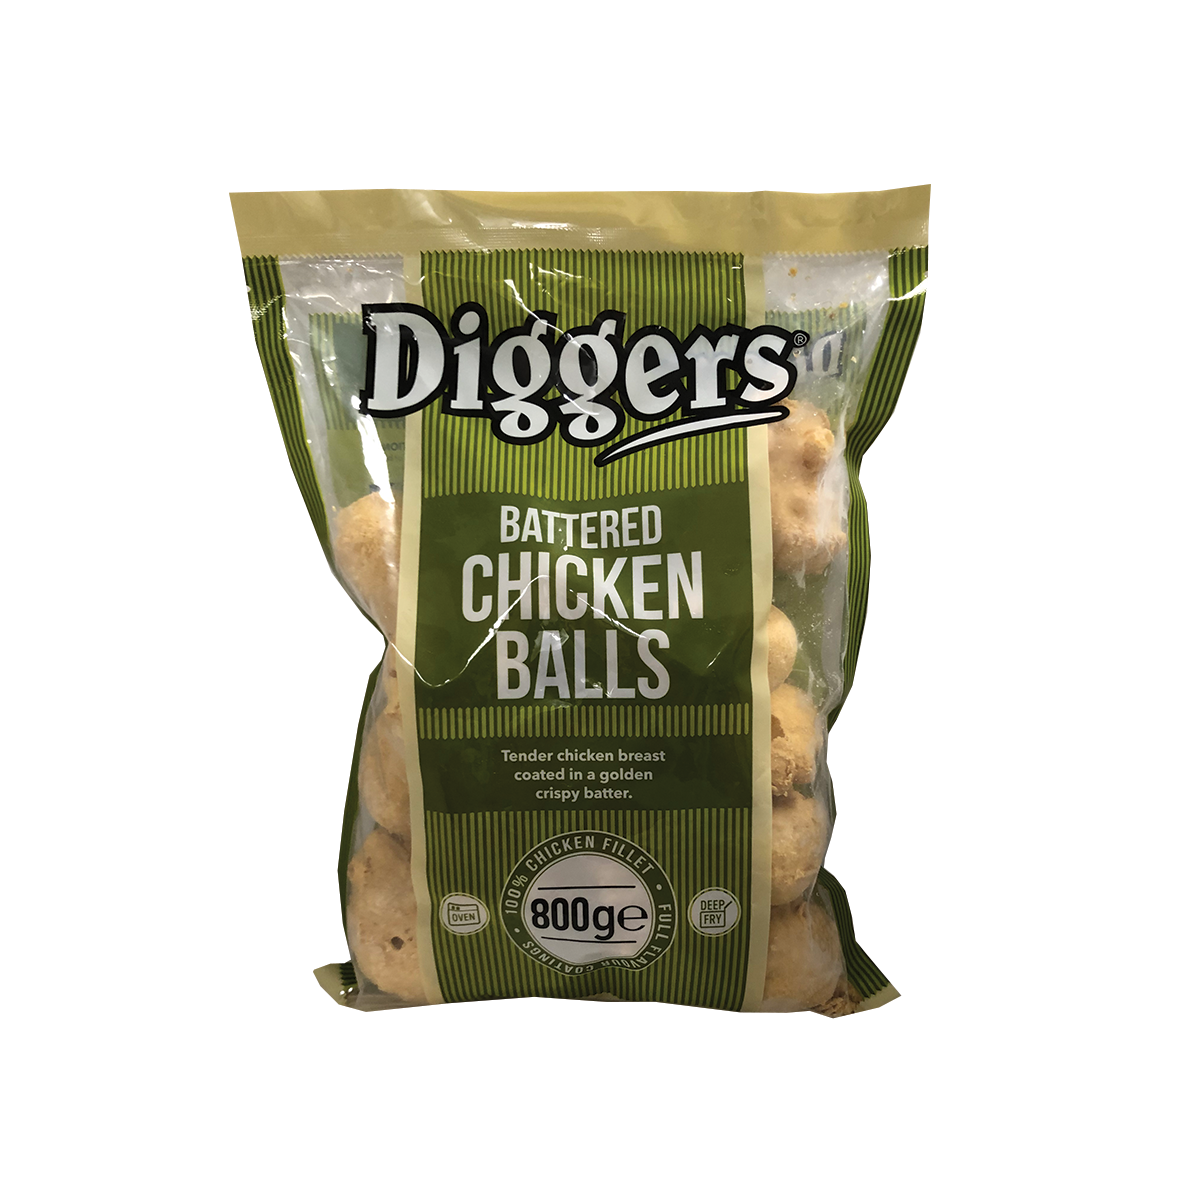 Diggers Battered Chicken Balls